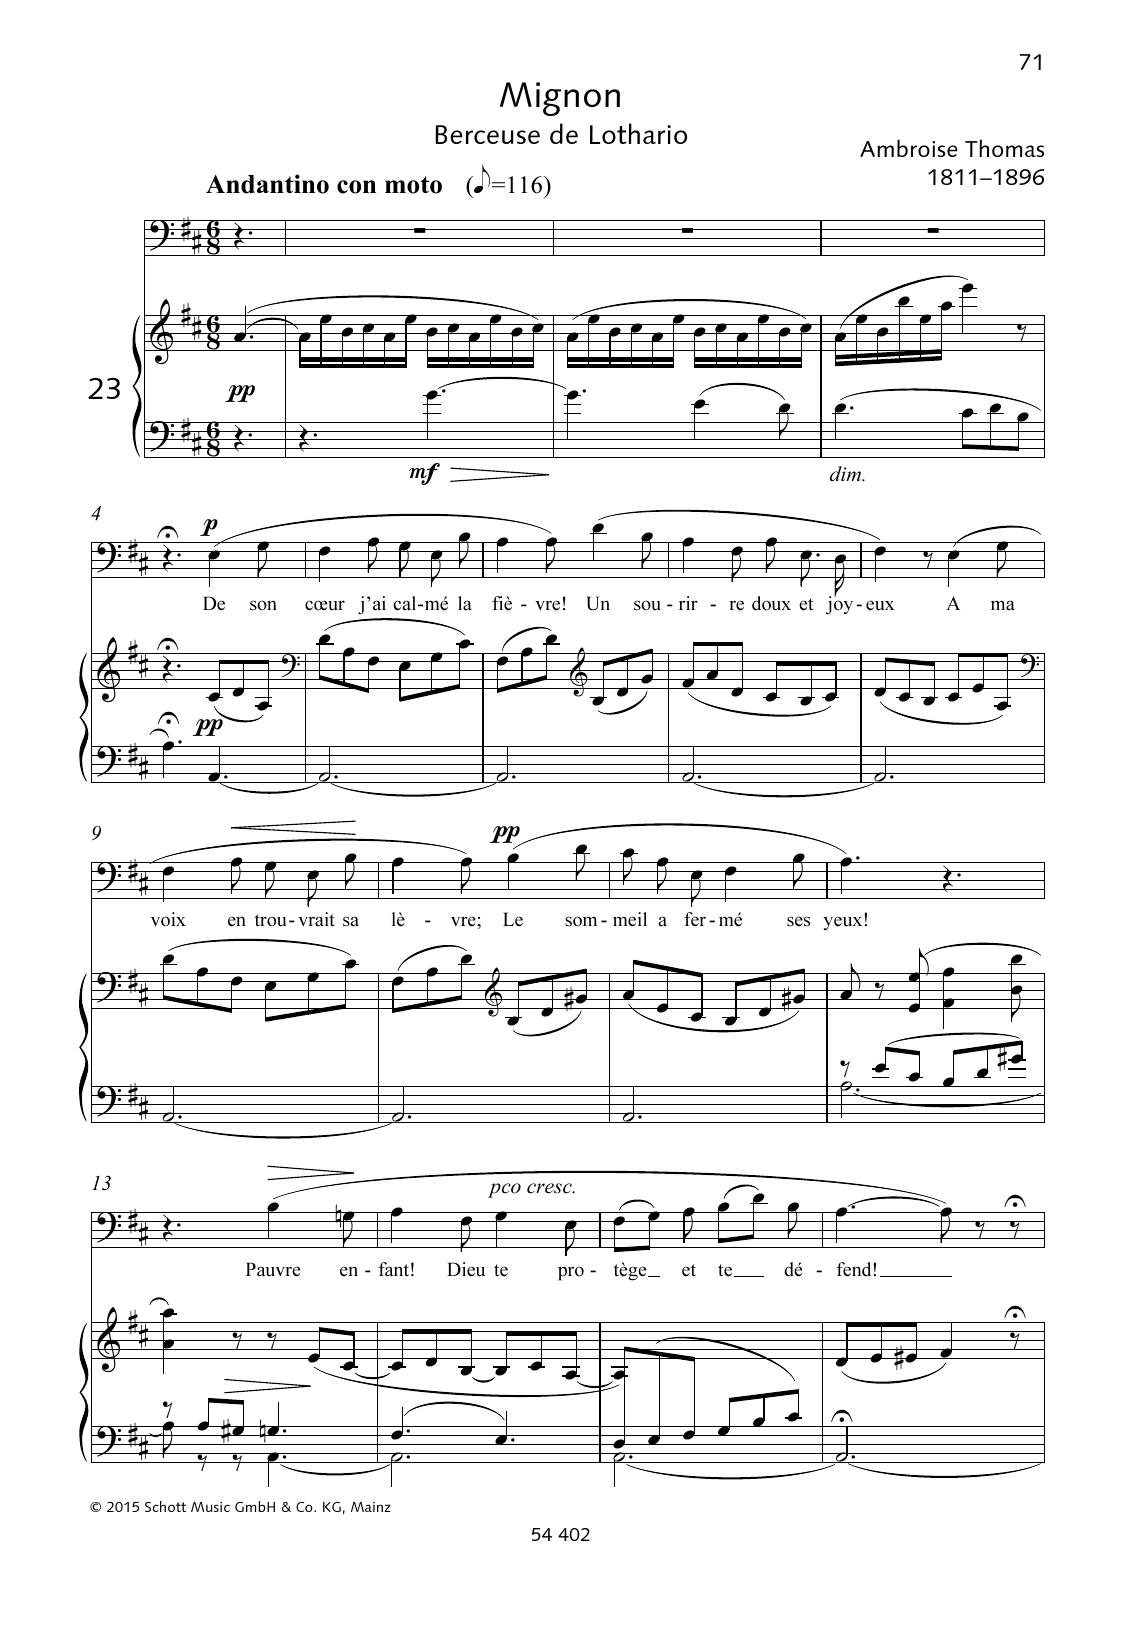 Ambroise Thomas De son coeur j'ai calmé la fièvre! Sheet Music Notes & Chords for Piano & Vocal - Download or Print PDF